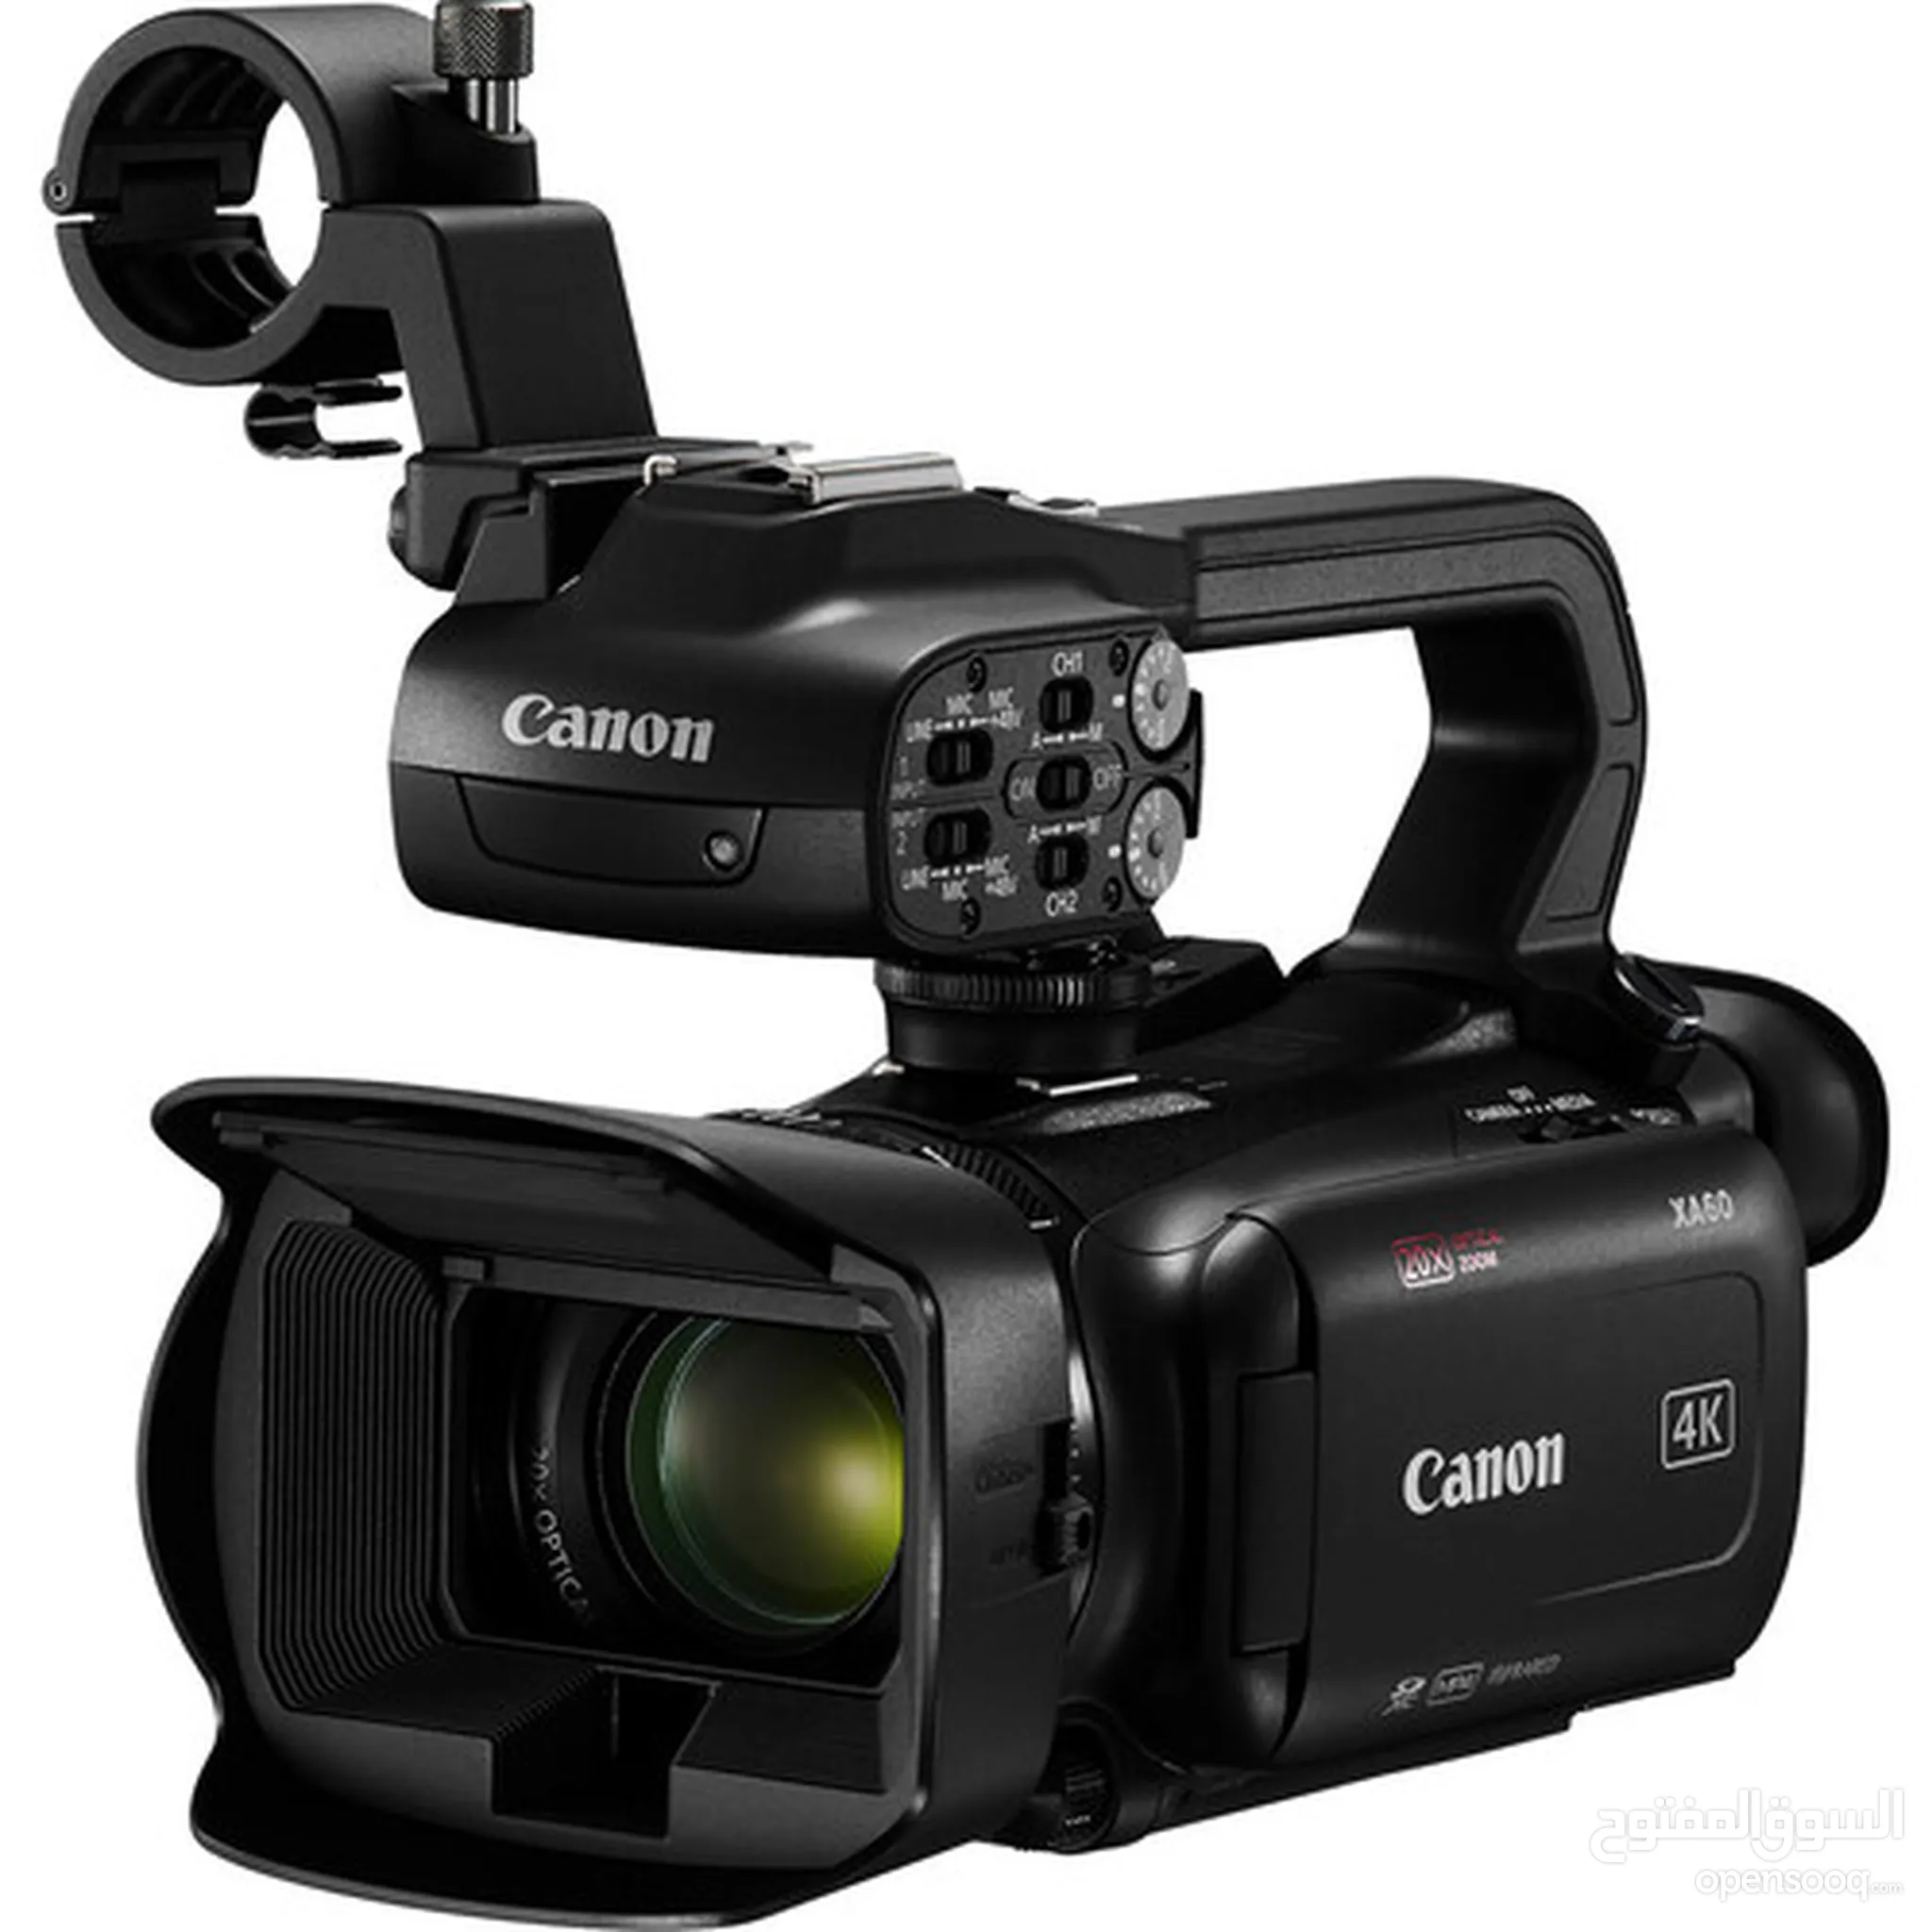 كام كانون للبيع : كاميرا كانون 4000d : 70D : 700D : 600D : 5D : أفضل الأسعار  : الإمارات | السوق المفتوح